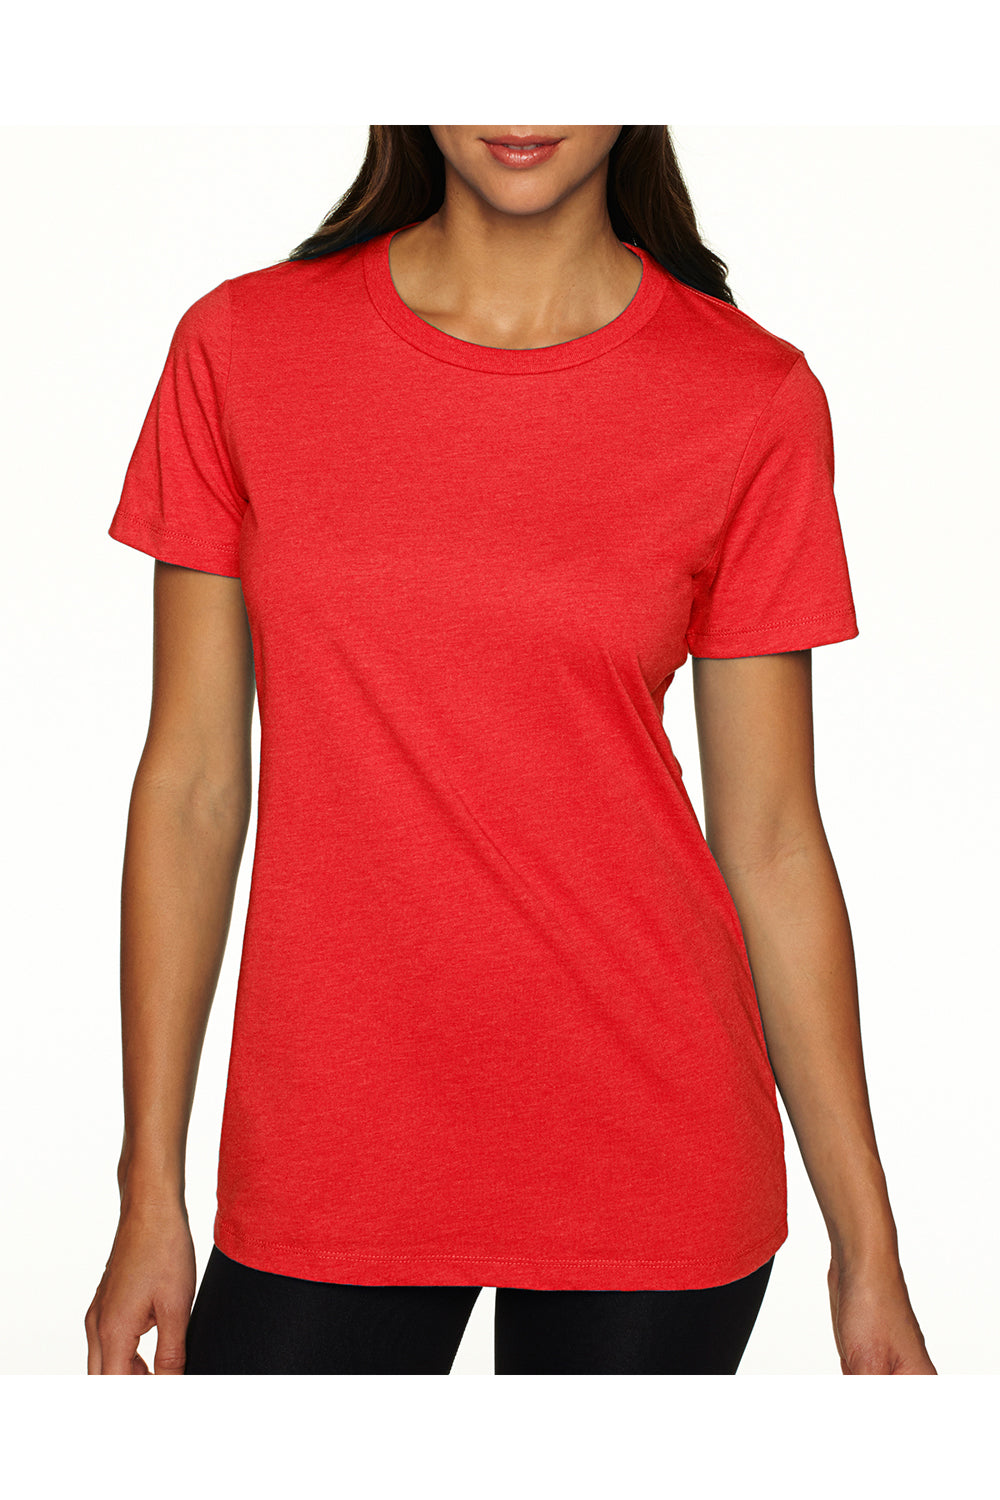 Next Level 6610 Womens CVC Jersey Short Sleeve Crewneck T-Shirt Red Front